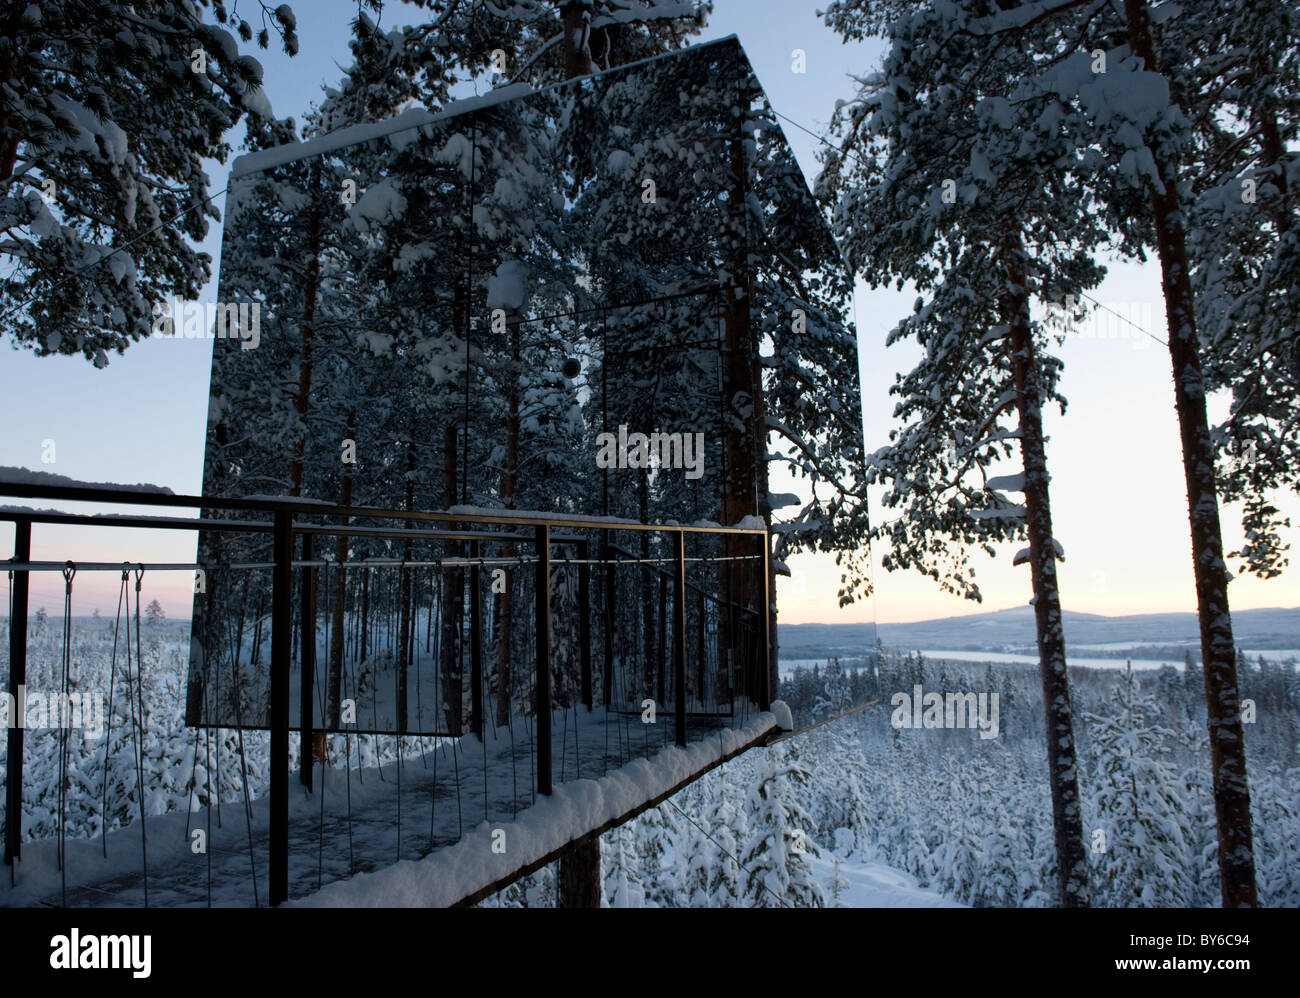 Il treehotel, architettura camere progettate in alberi Foto Stock